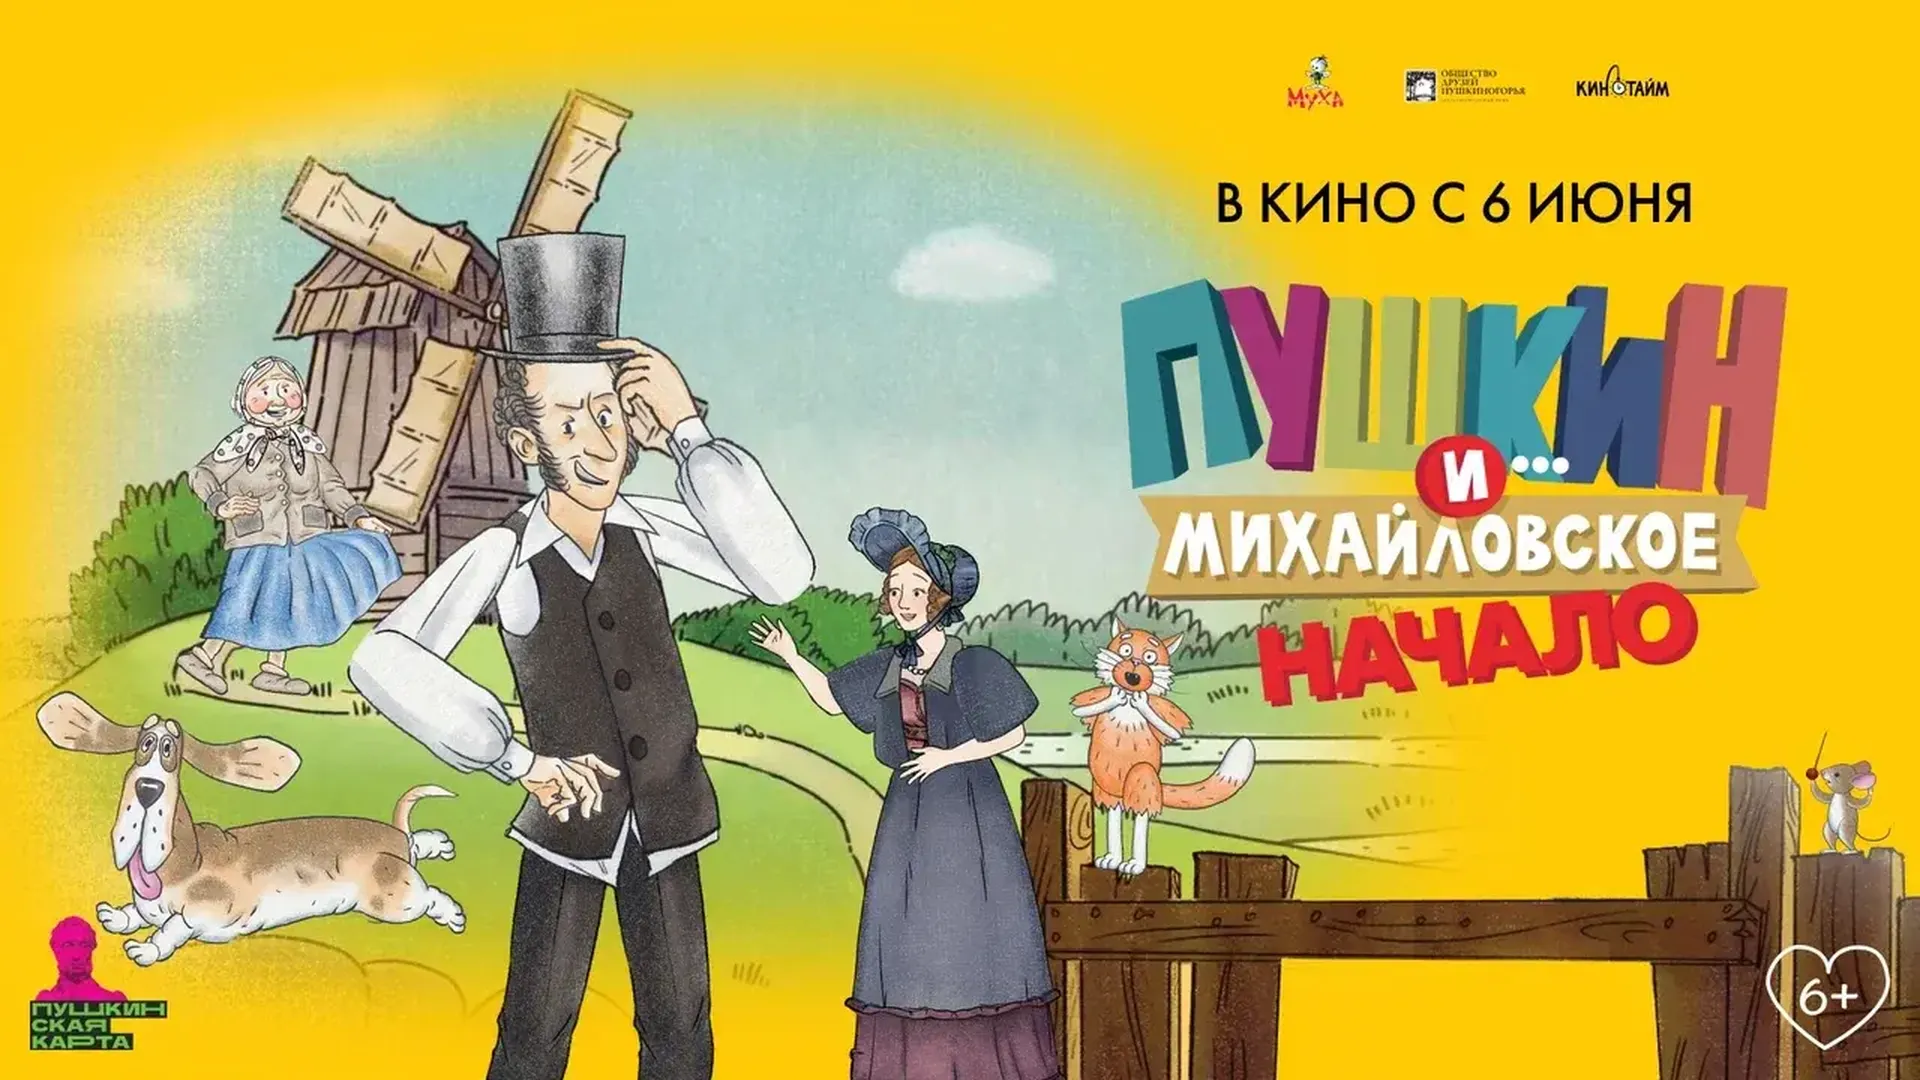 Мультфильм о жизни Александра Пушкина в Михайловском выйдет в прокат в июне